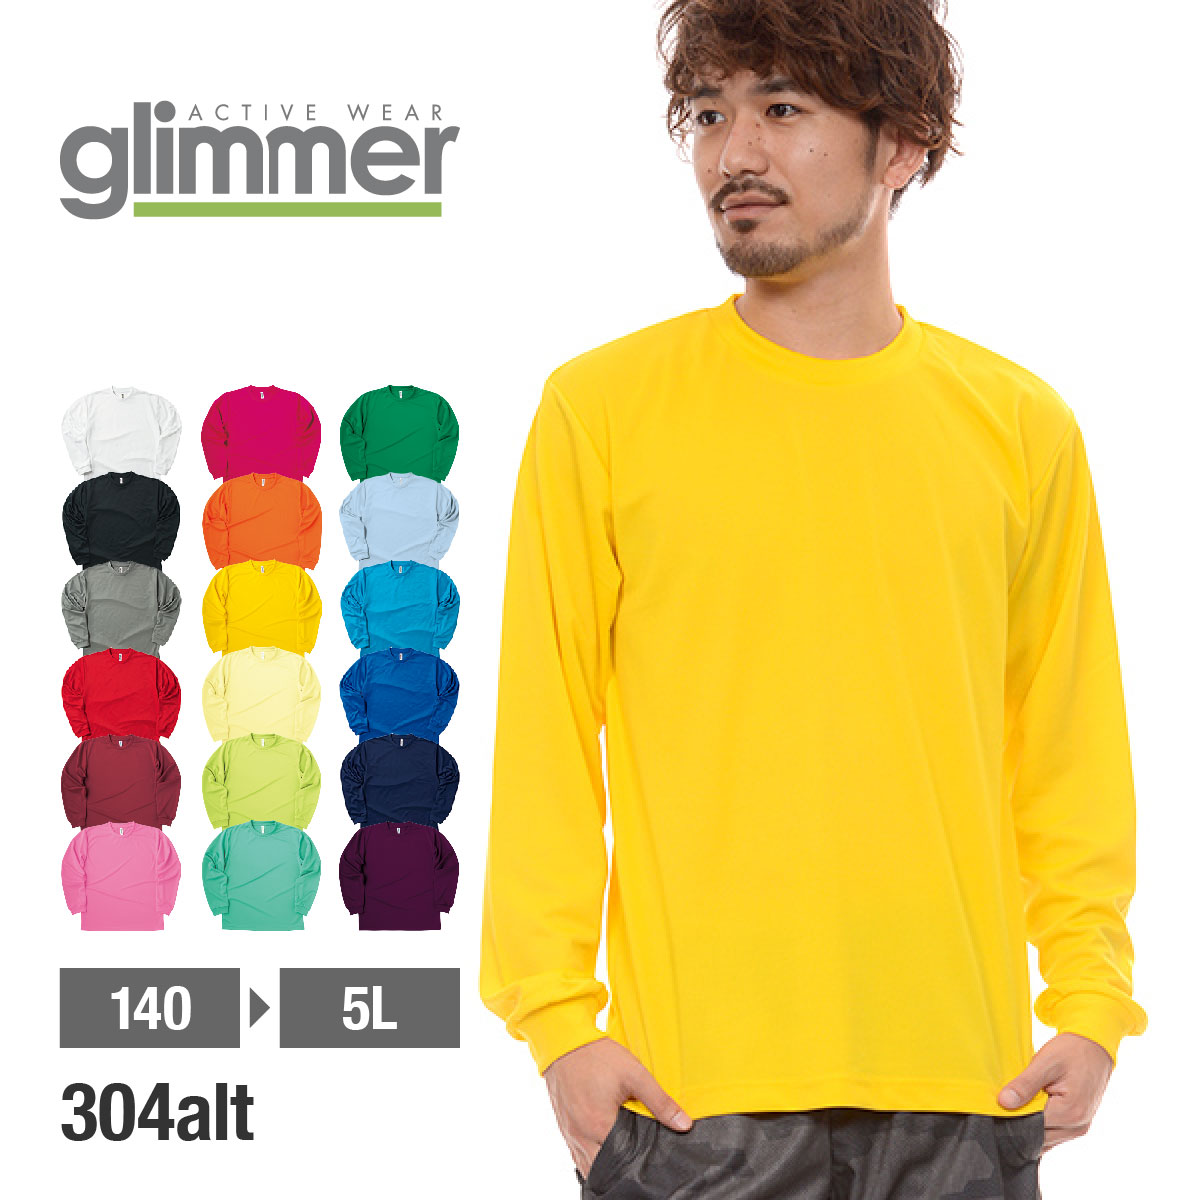 ドライ Tシャツ メンズ 長袖 セール特別価格 無地 大きいサイズ 4L-7L 速乾 tシャツ GLIMMER スポーツ ドライロングスリーブTシャツ ロンティー uvカット 送料無料 特別セール品 00304-ALT グリマー ユニフォーム 吸汗 ロンT